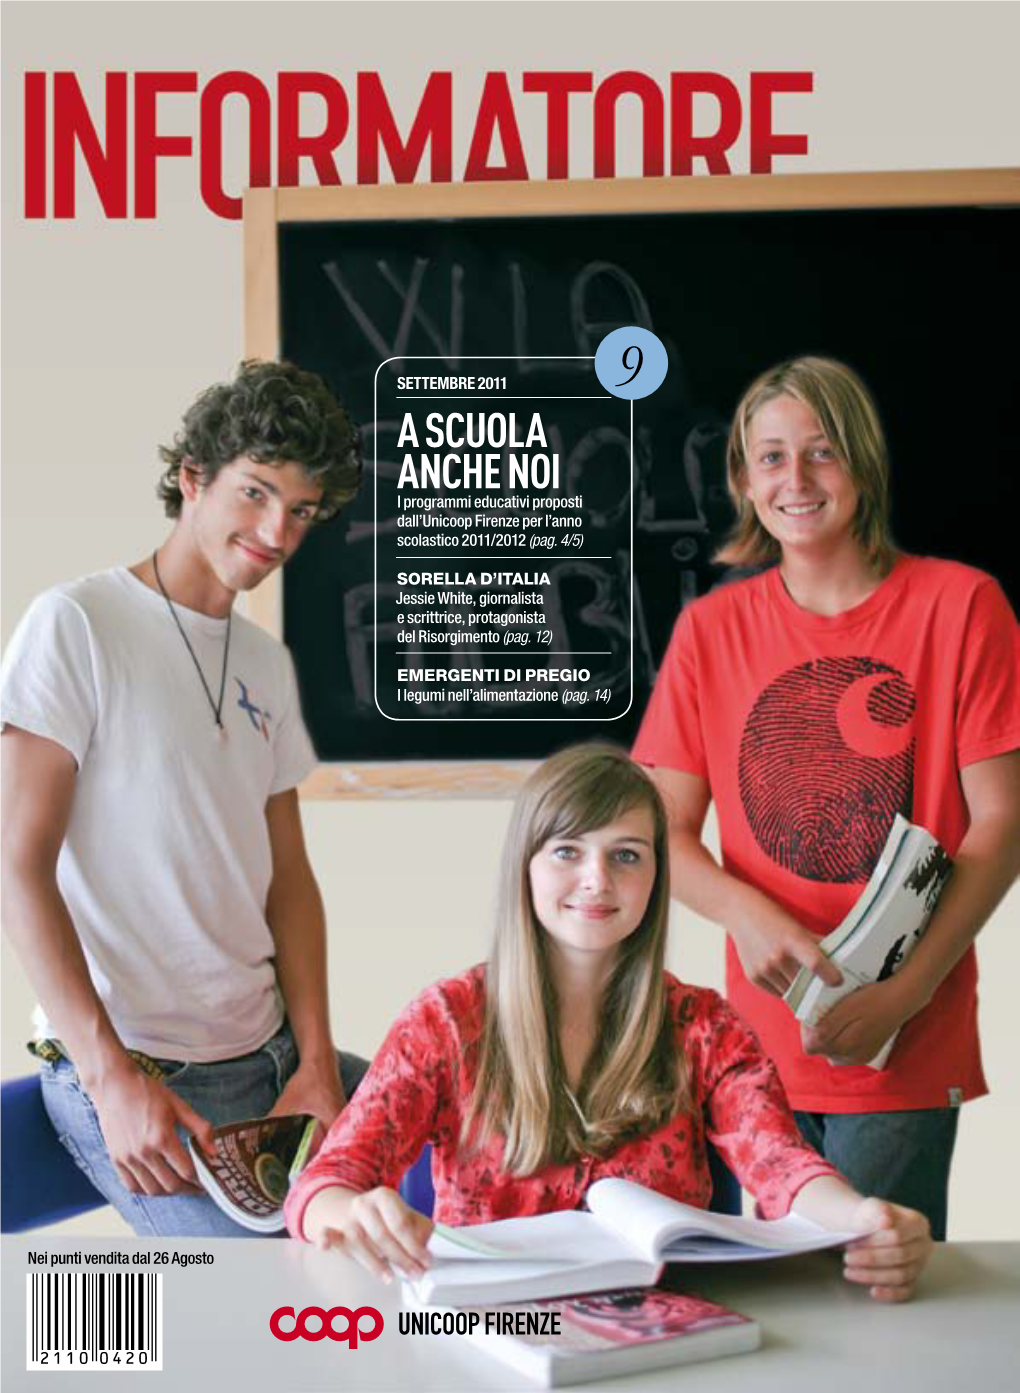 A Scuola Anche Noi I Programmi Educativi Proposti Dall’Unicoop Firenze Per L’Anno Scolastico 2011/2012 (Pag